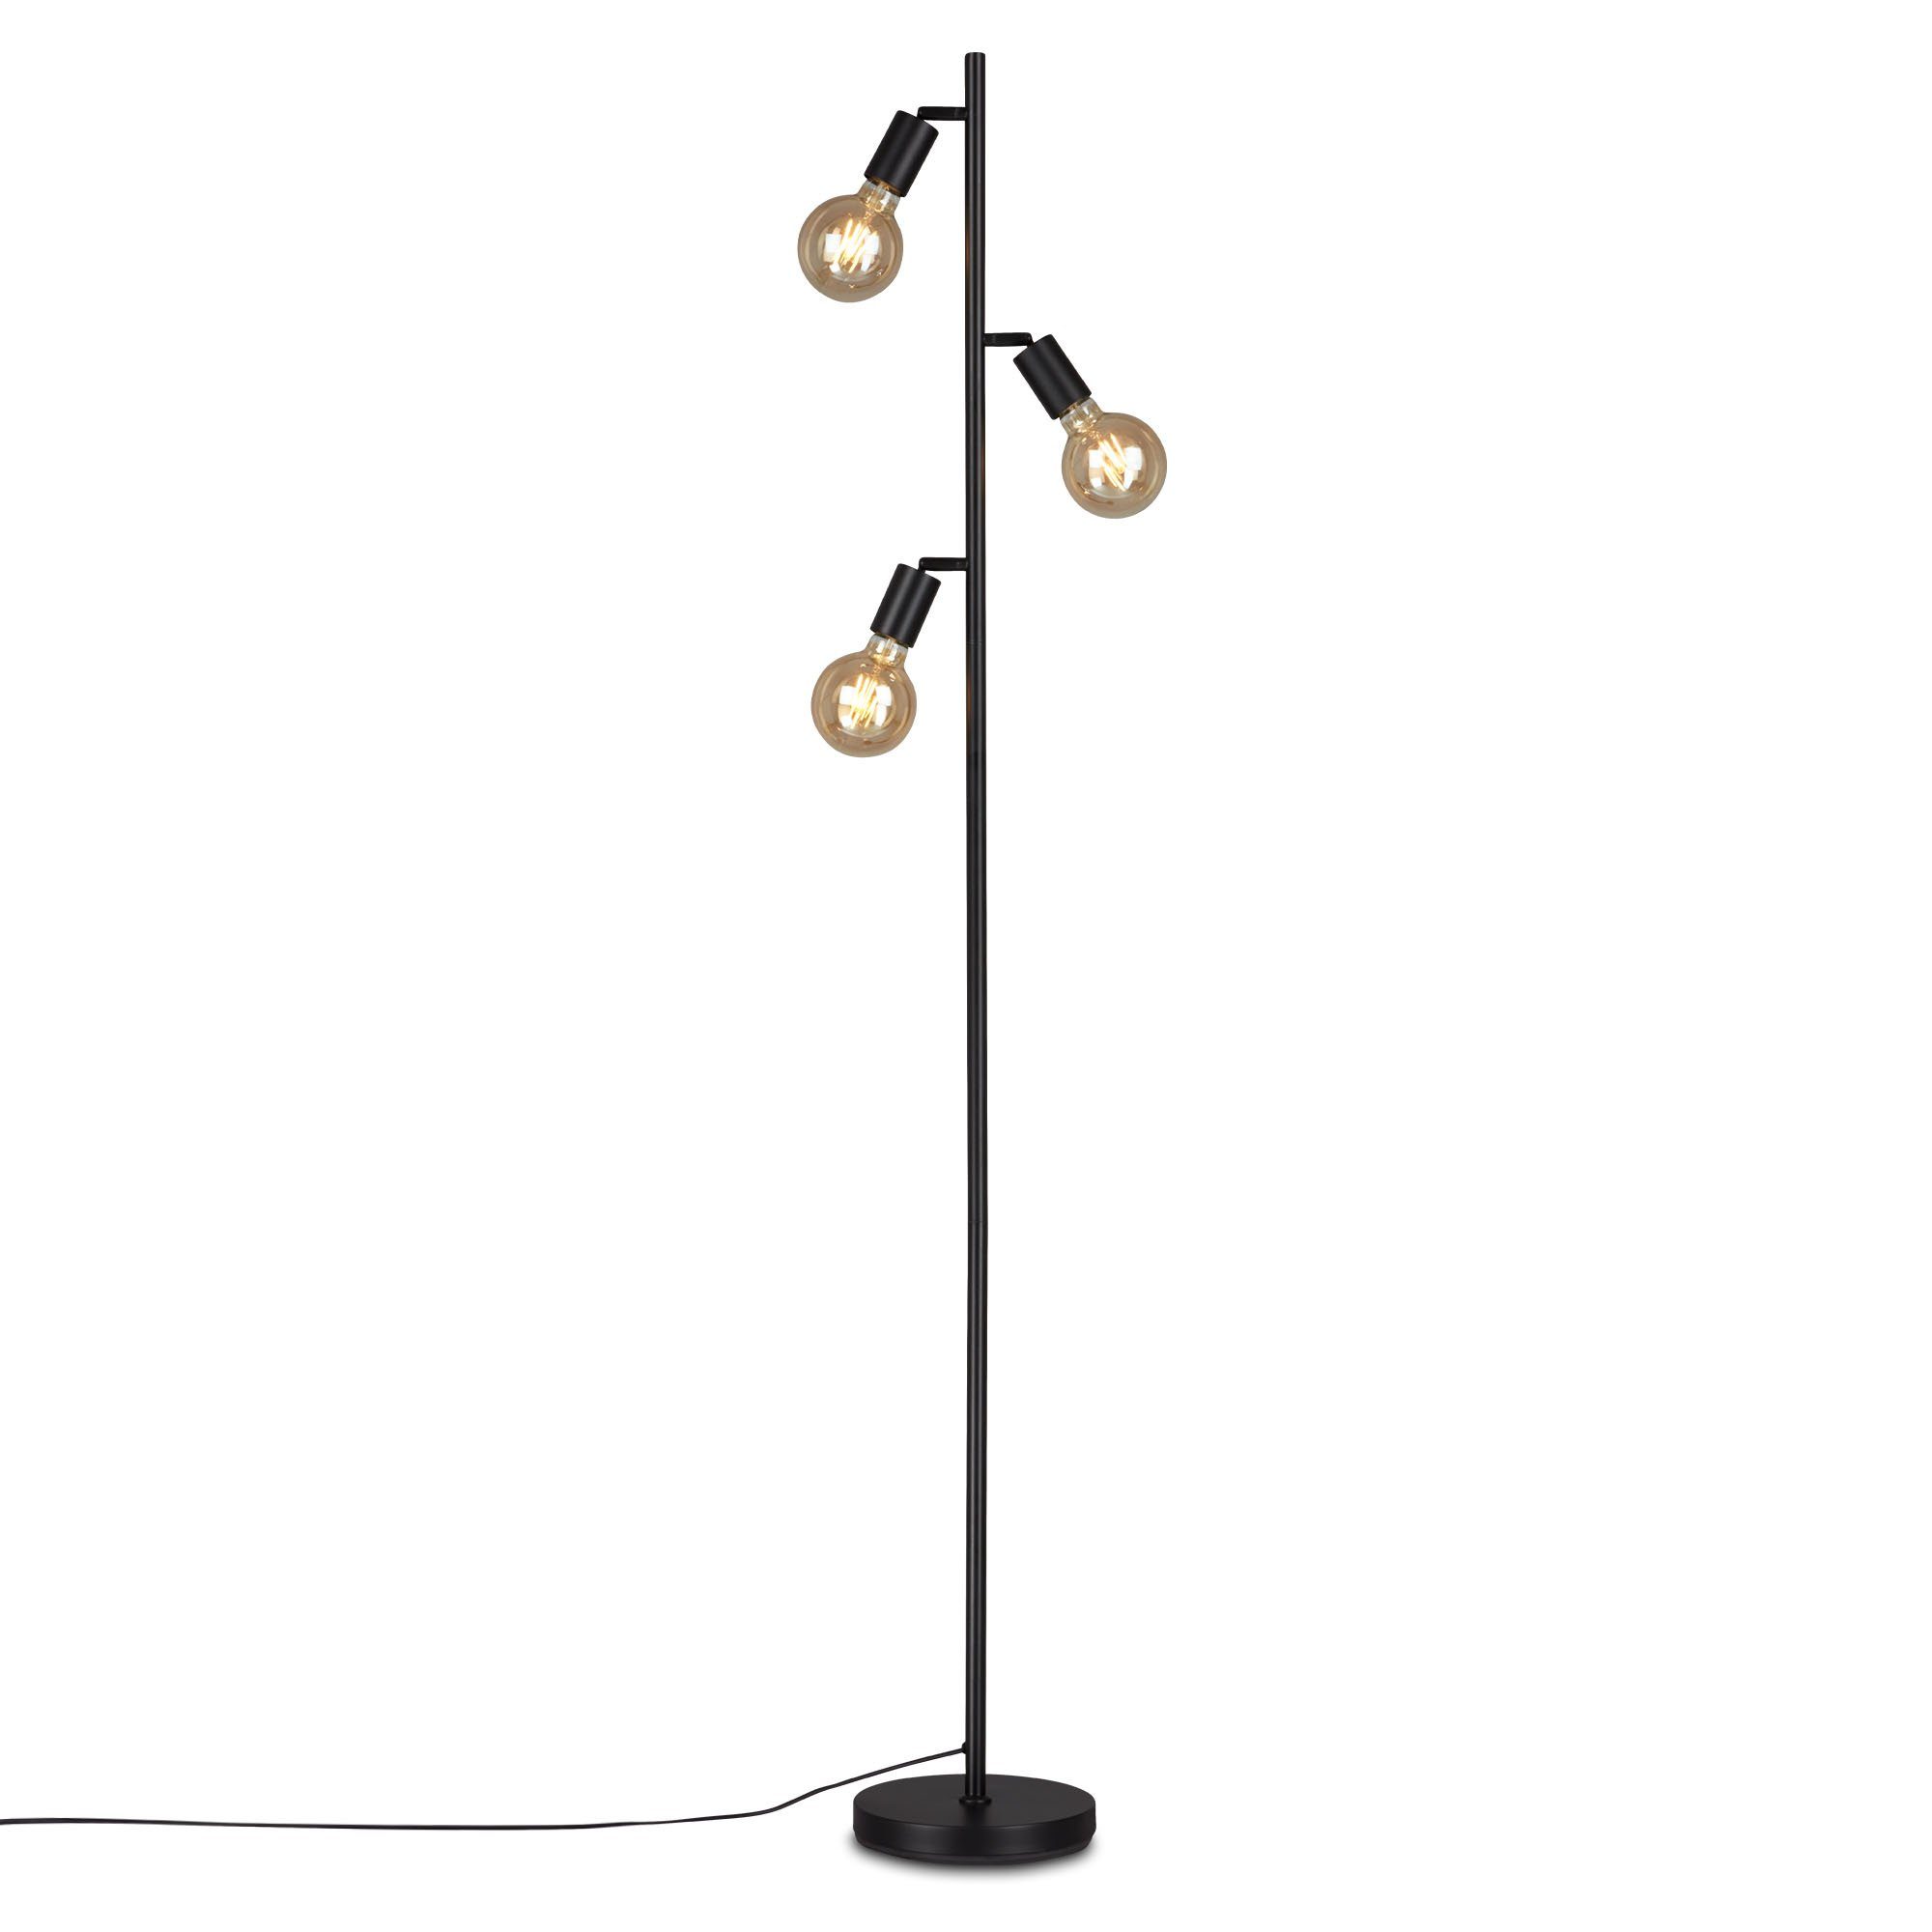 Briloner Leuchten Stehlampe 1387-035, ohne Leuchtmittel, Warmweiß, metall/ schwarz, inkl. Kabelschalter, exkl. 3x E27 max. 10 W